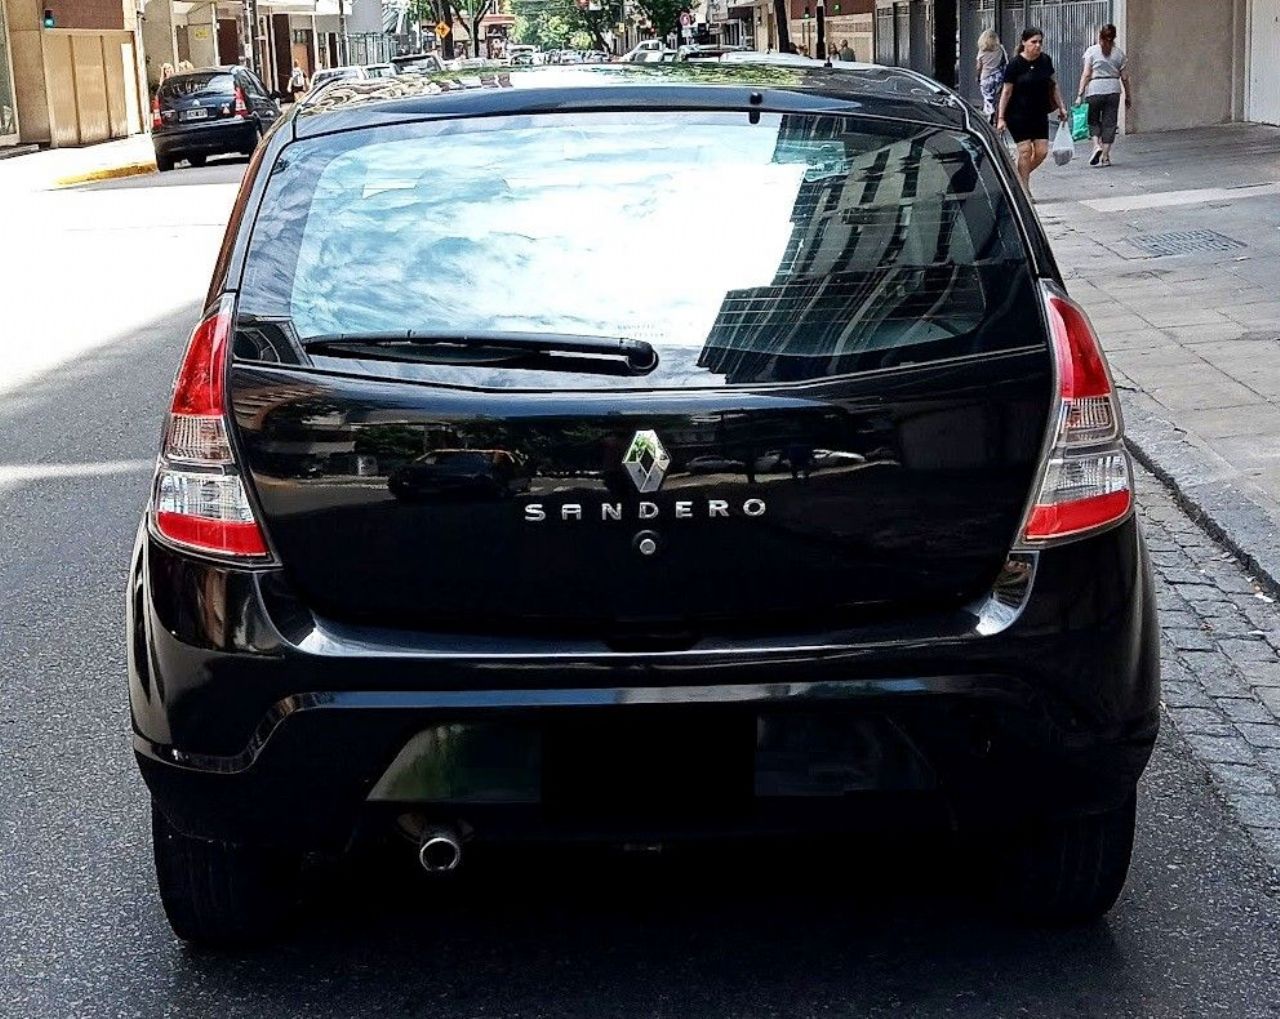 Renault Sandero Usado en Buenos Aires, deRuedas